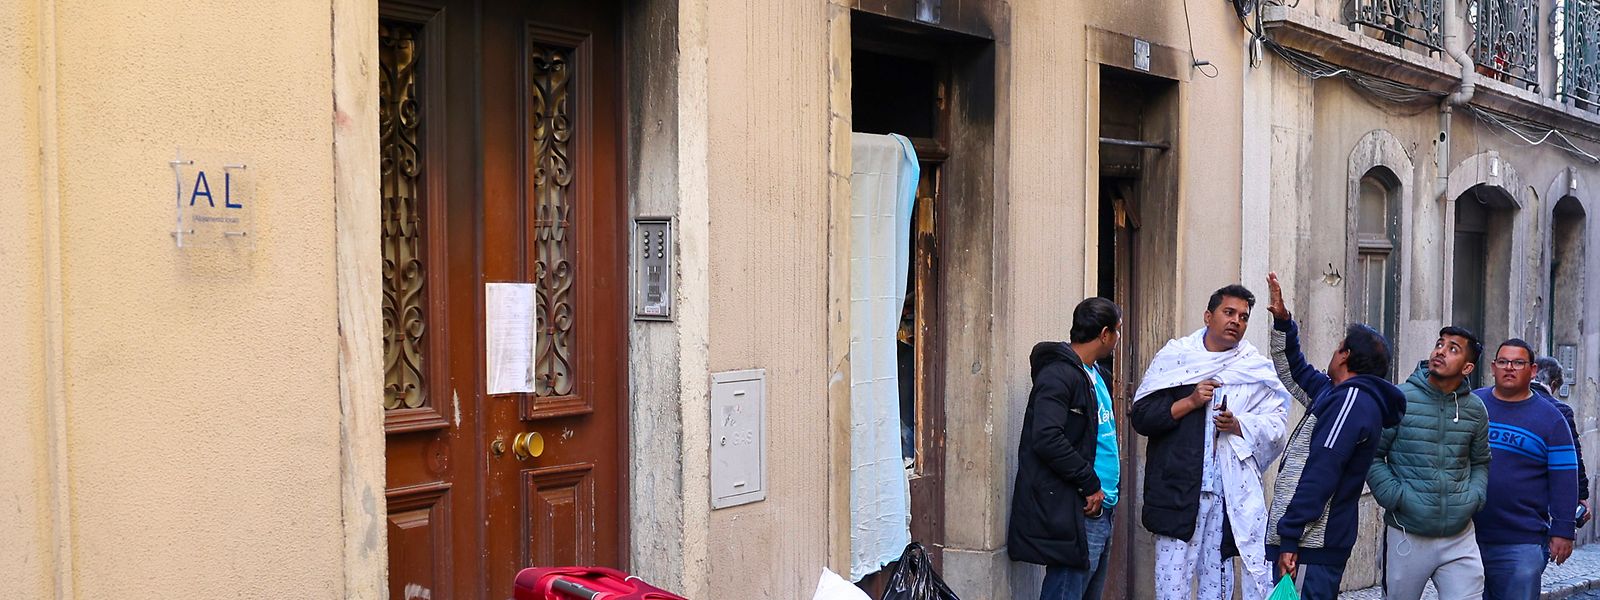 Um incêndio, no número 55 da Rua do Terreirinho, no bairro da Mouraria, em Lisboa, provocou no passado sábado, dois mortos e 14 feridos.